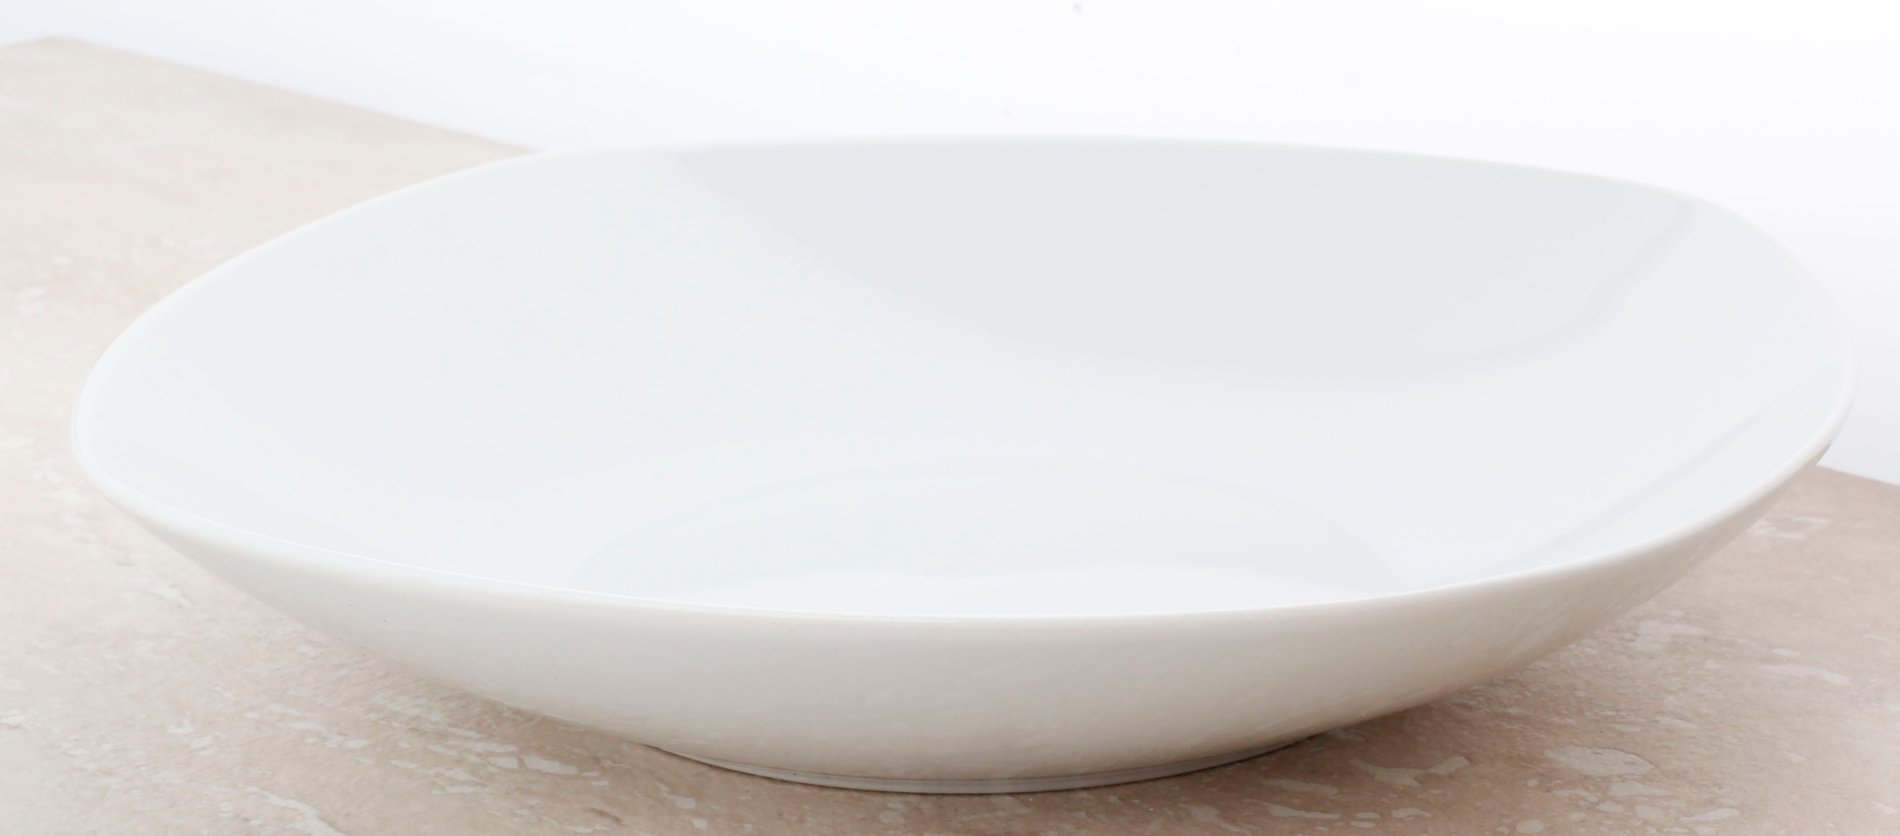 Keramický hluboký talíř CLASSIC WHITE 23 x 23 cm